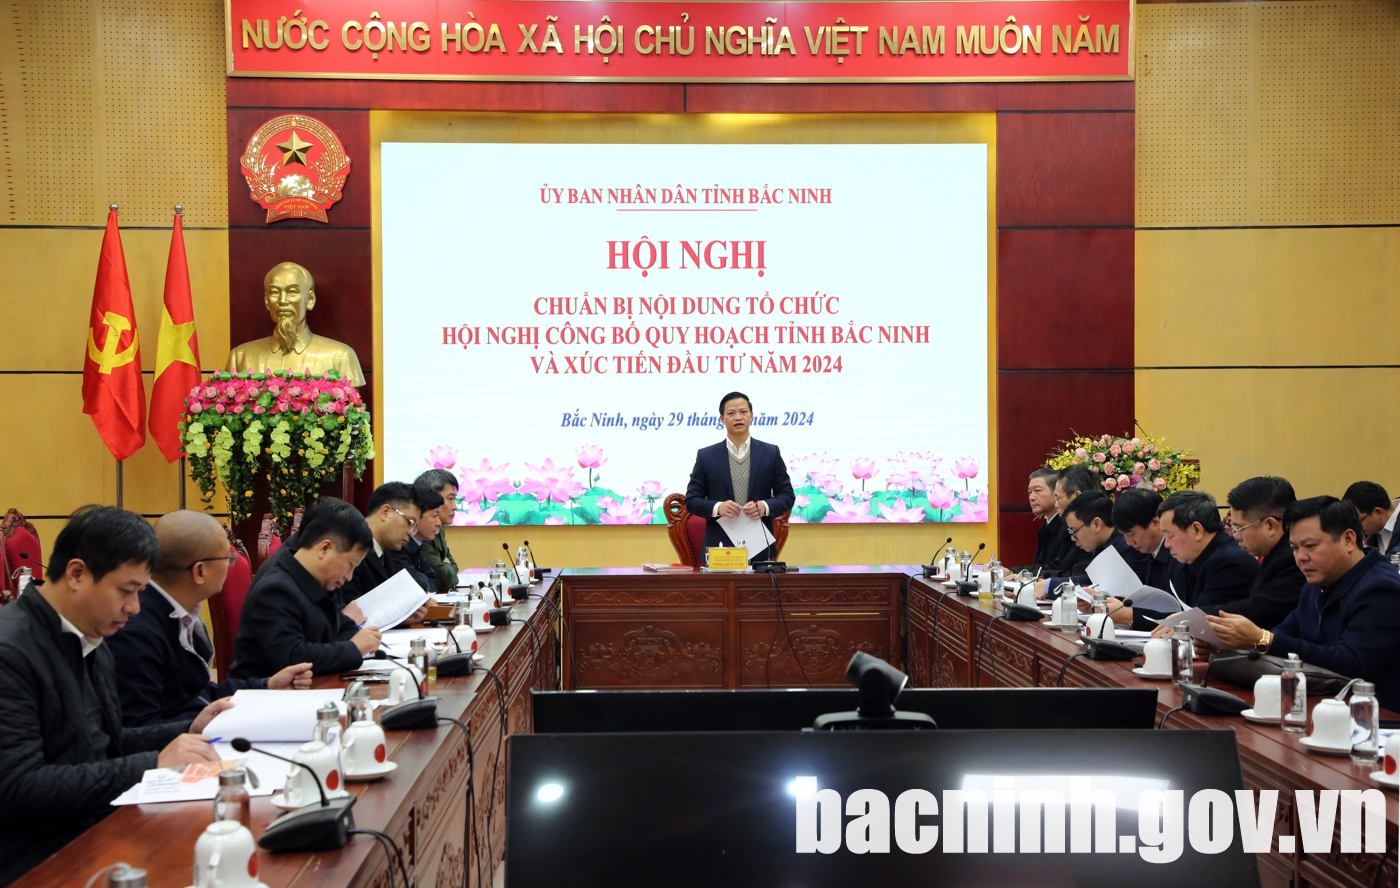 Hội nghị chuẩn bị công bố Quy hoạch tỉnh Bắc Ninh và xúc tiến đầu tư năm 2024